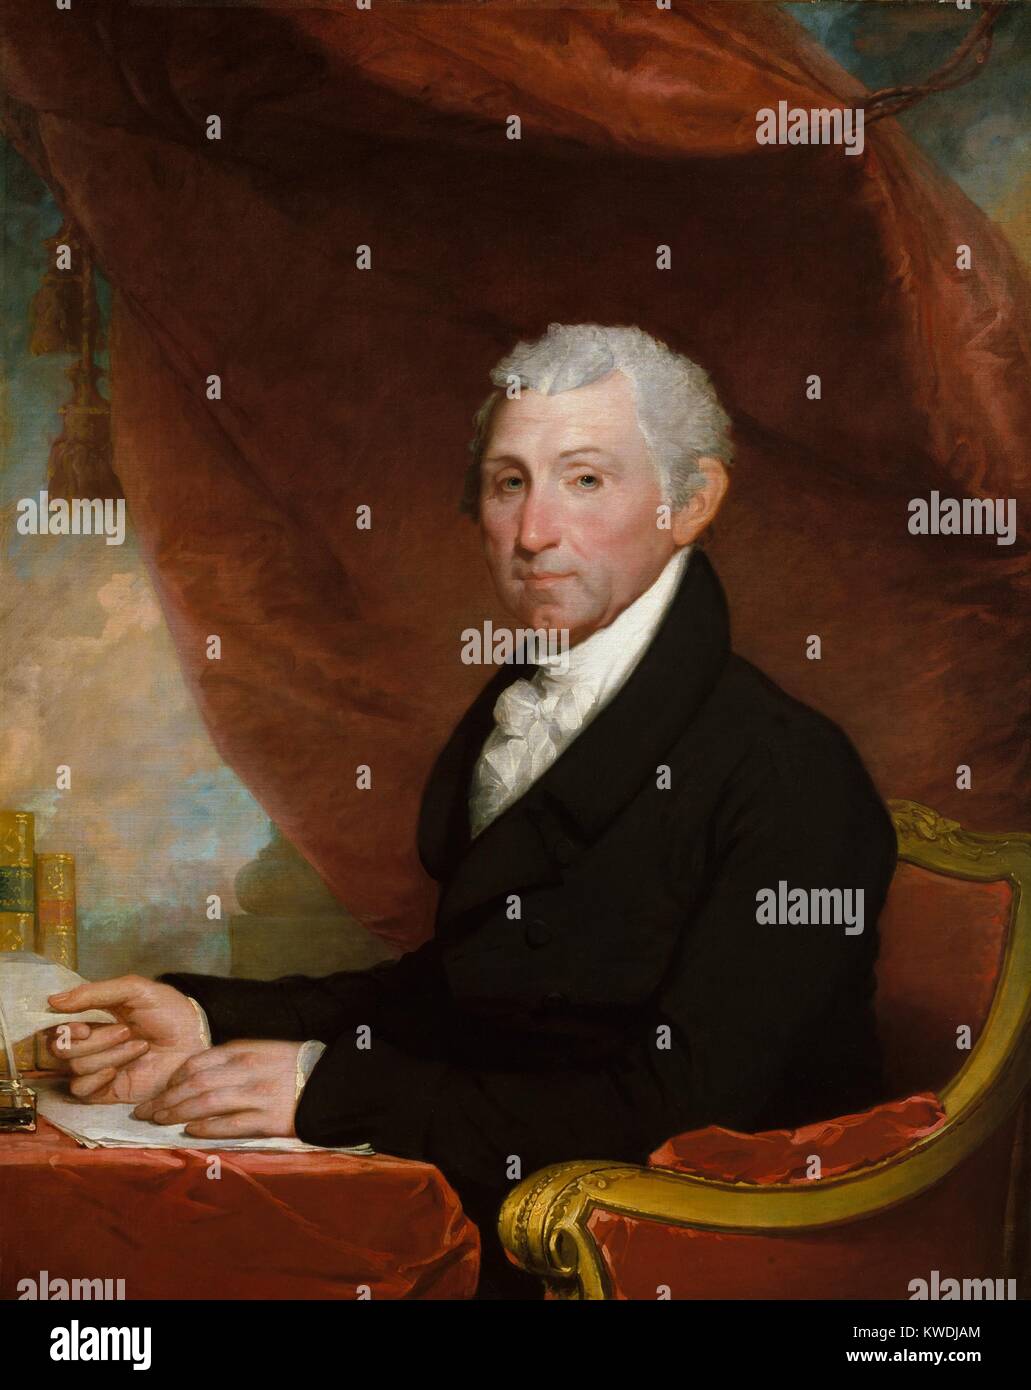 JAMES MONROE, por Gilbert Stuart, 1820-22, la pintura norteamericana, óleo sobre lienzo. El quinto Presidente de los Estados Unidos está representado en un escritorio con libros y papeles, y cortinas rojas (BSLOC_2017_10_113) Foto de stock